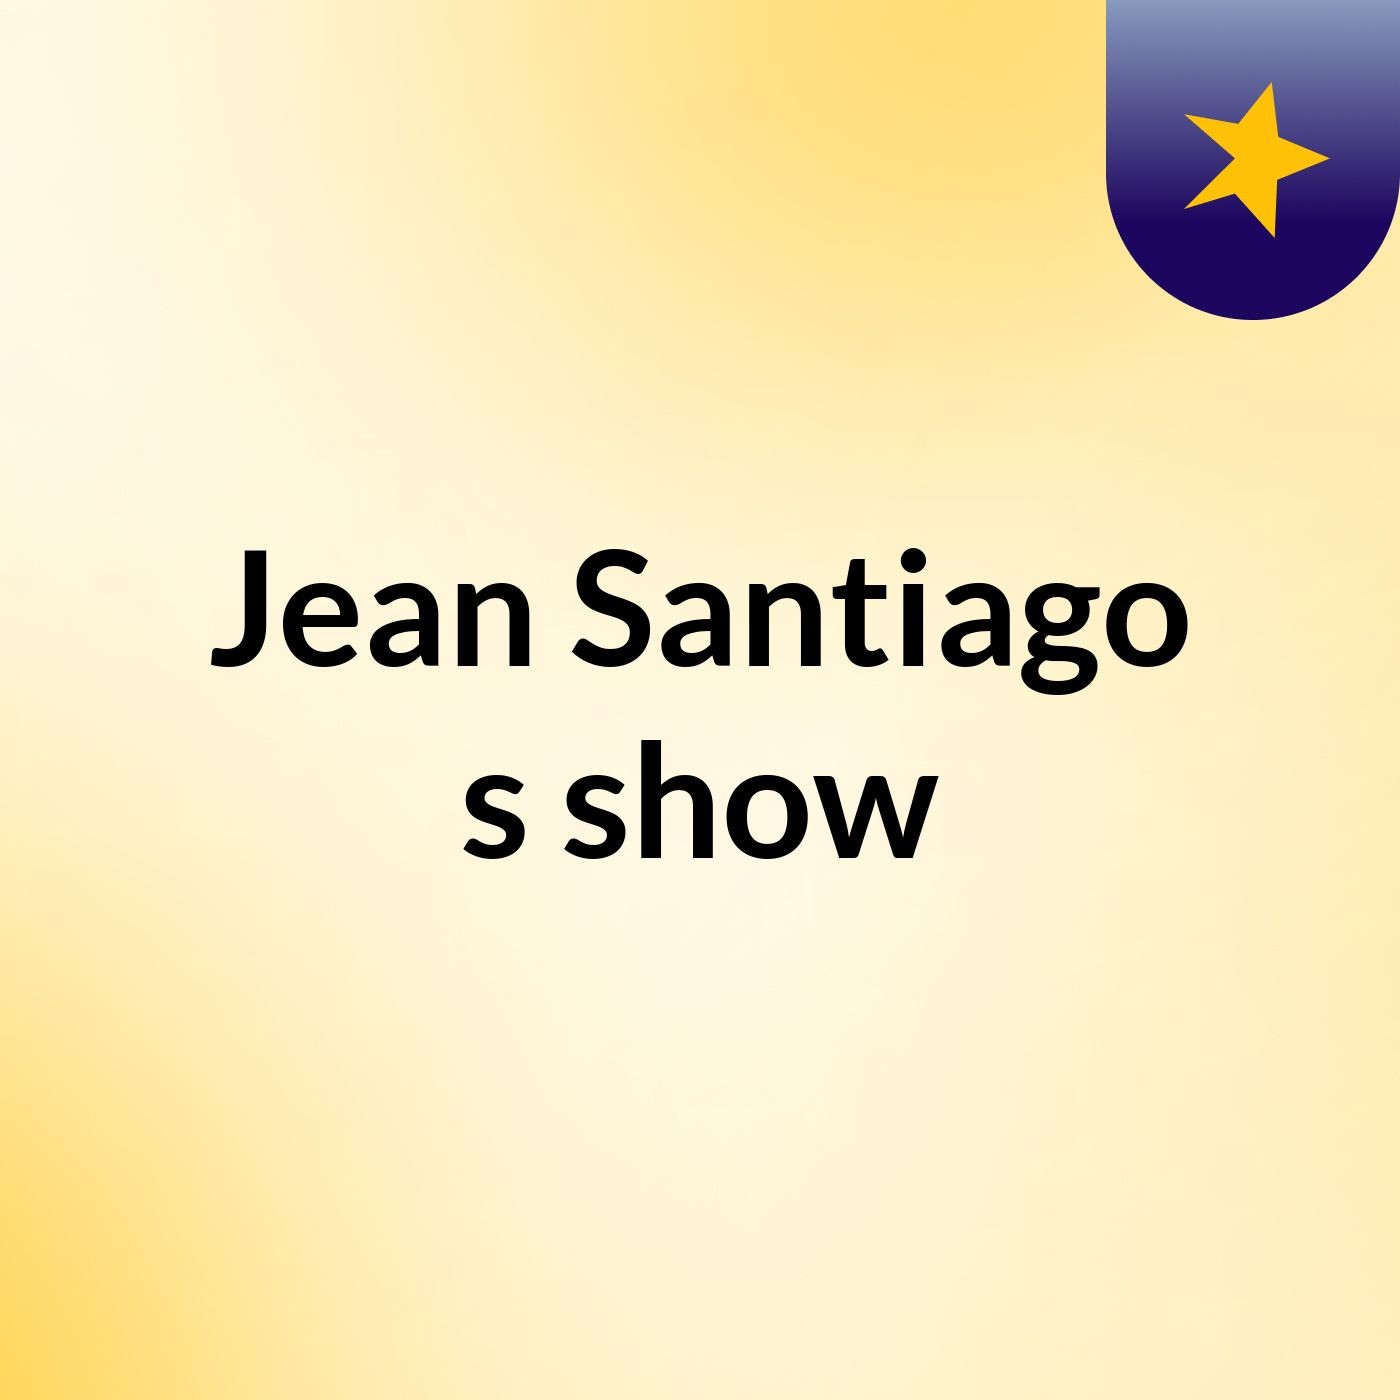 Jean Santiago's show